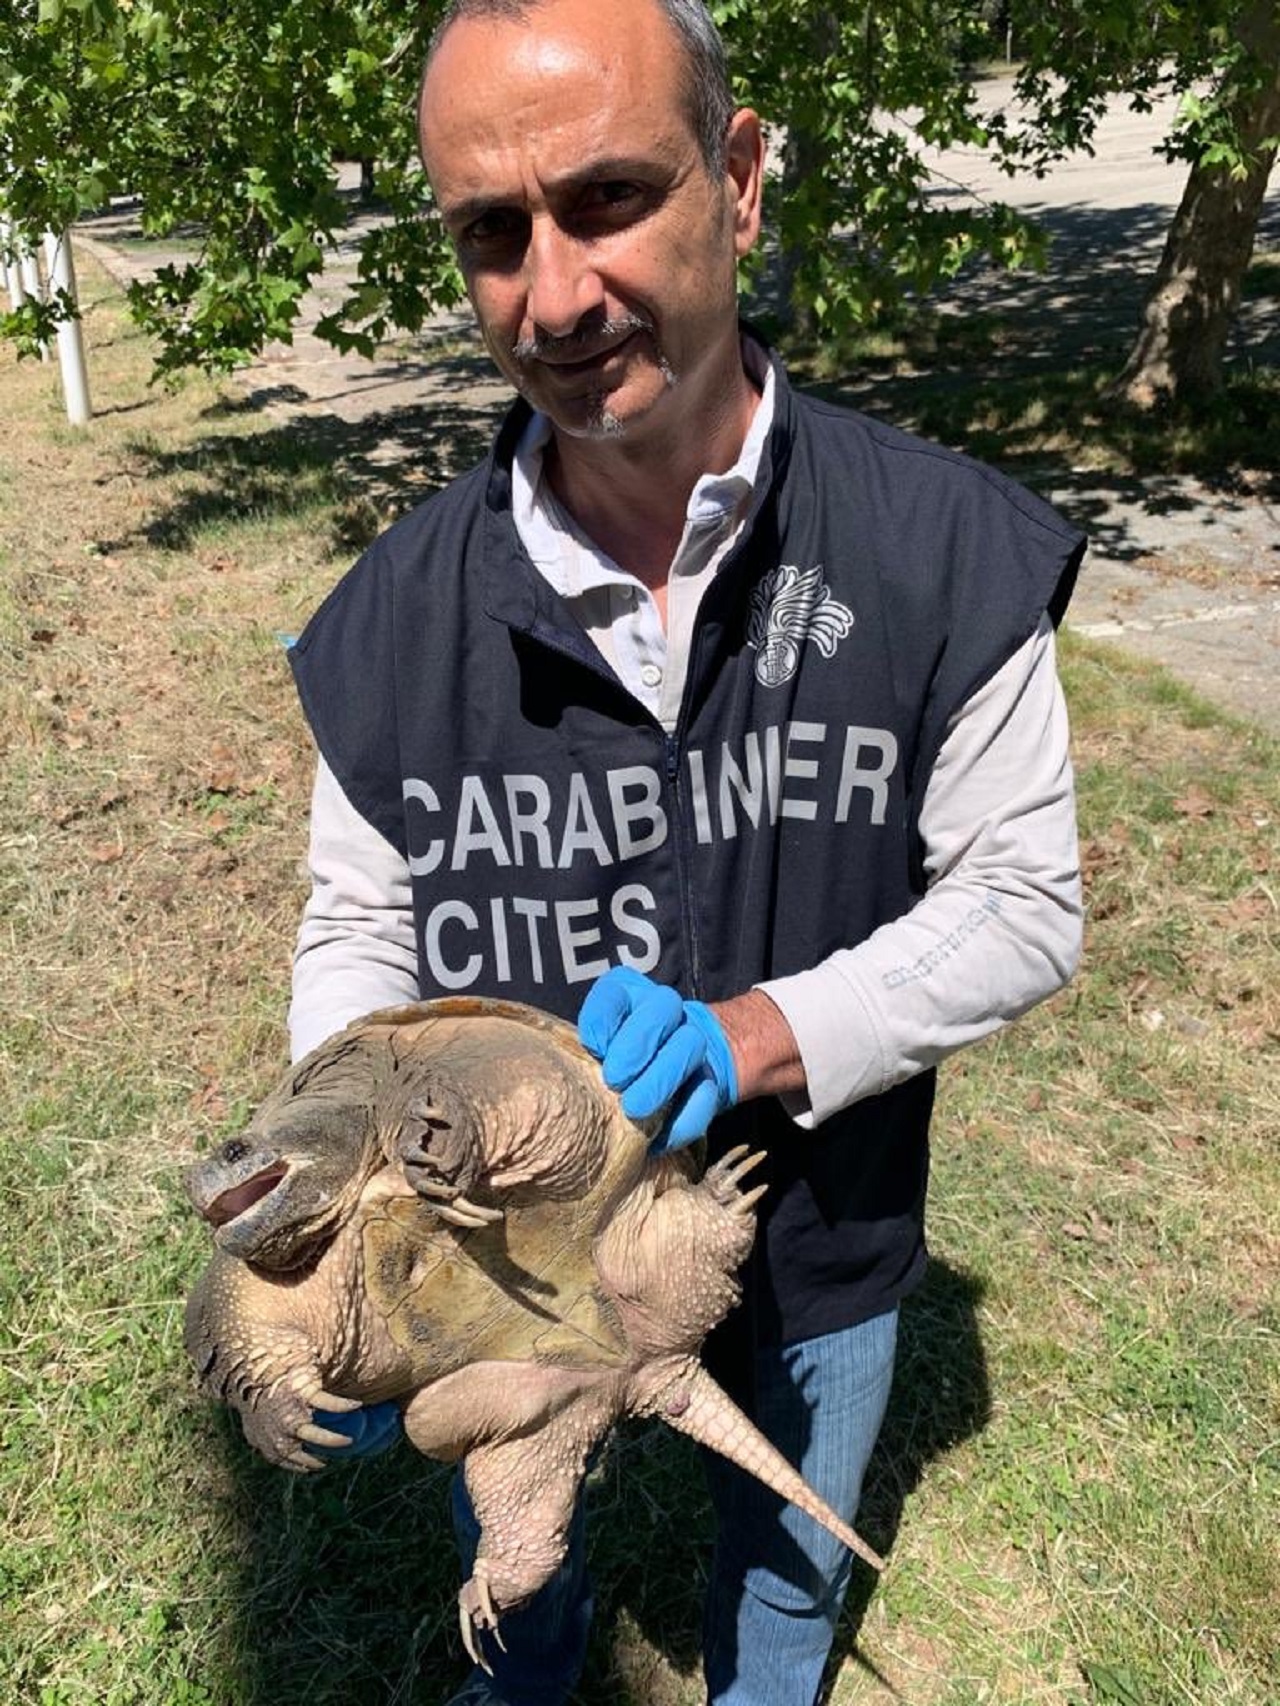 L'esemplare di tartaruga azzannatrice recuperato dai carabinieri del raggruppamento Cites